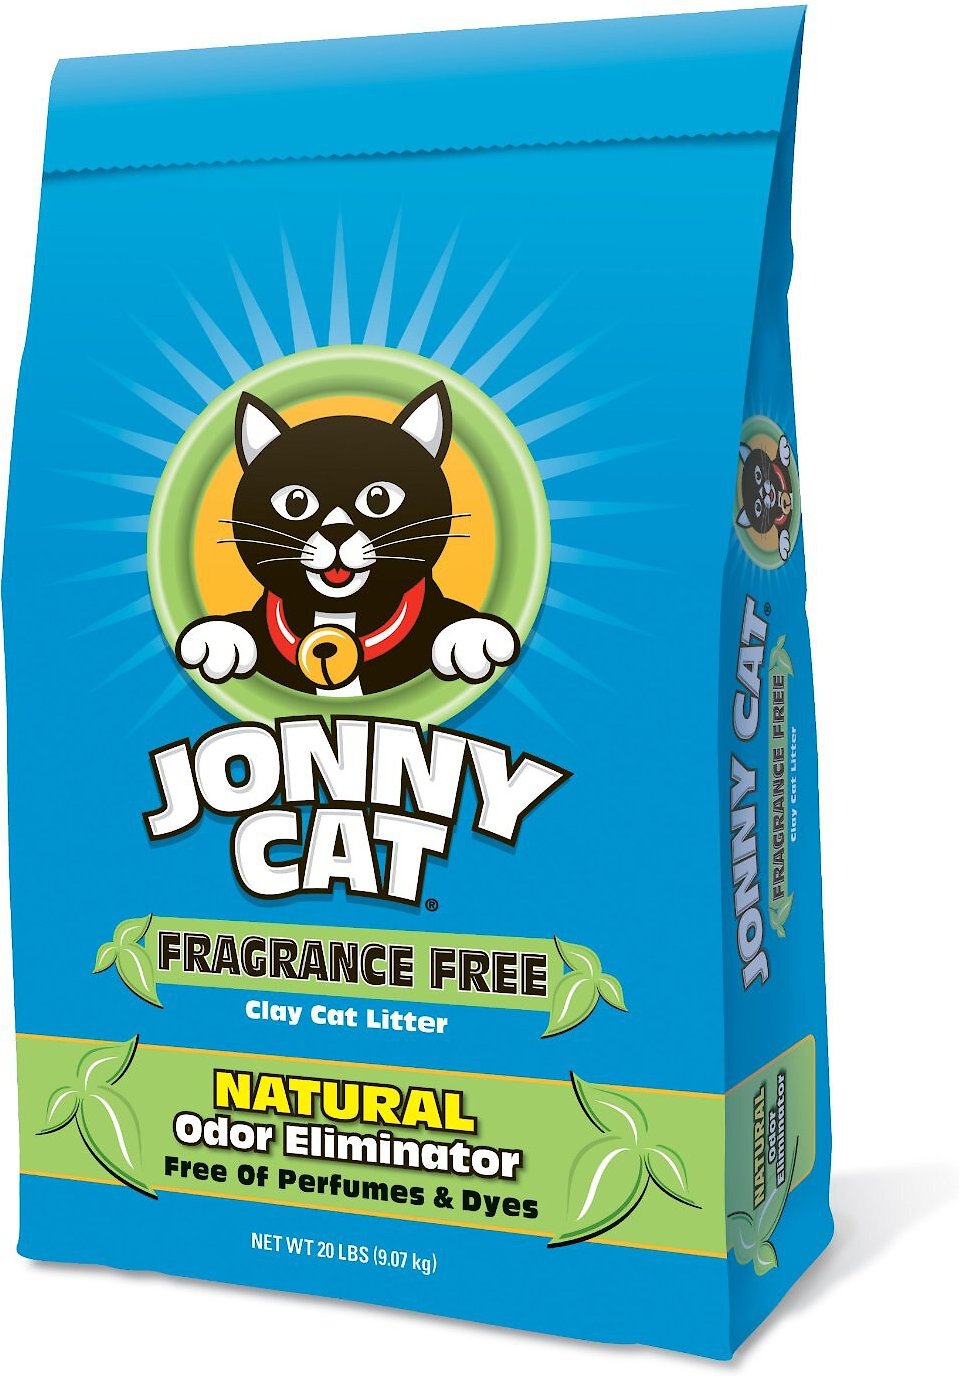 Jonny Cat Fragrance Free Cat Litter, 20lb bag